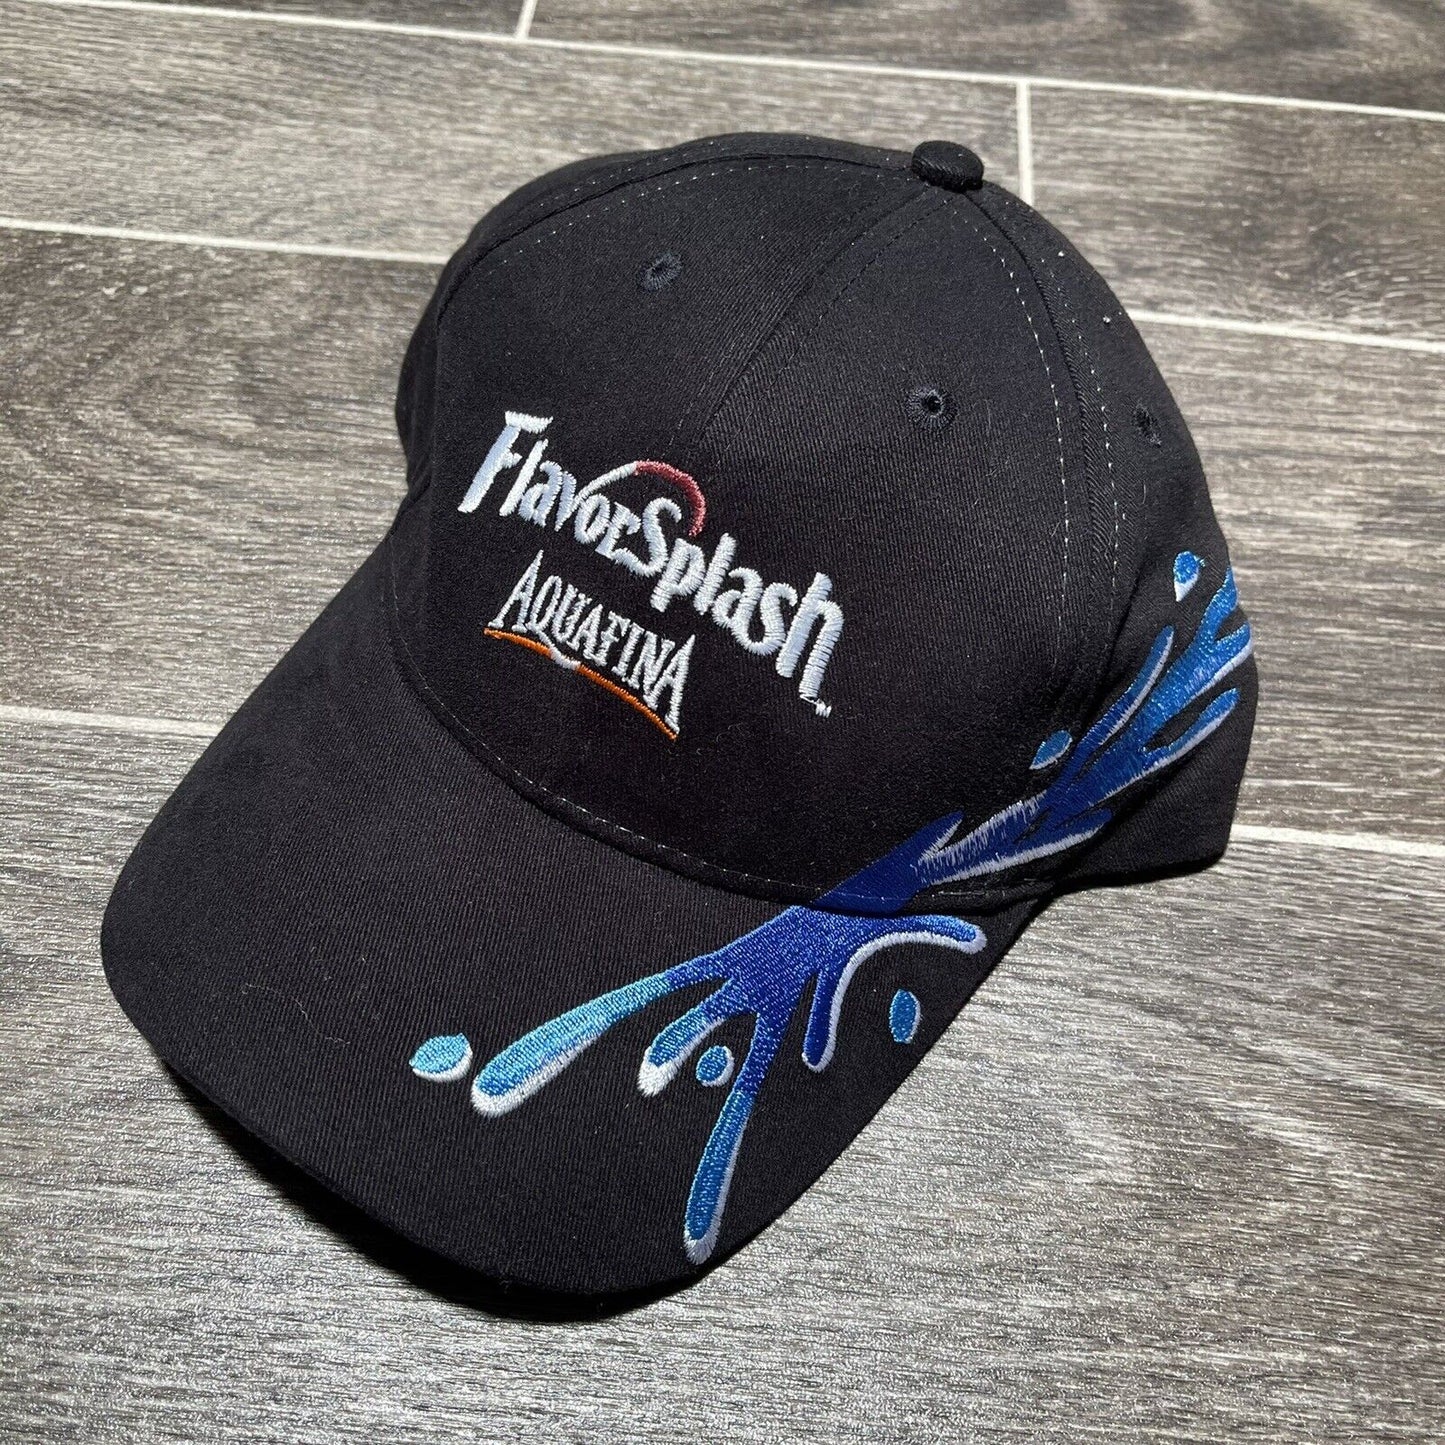 Aquafina Flavor Spash Hat